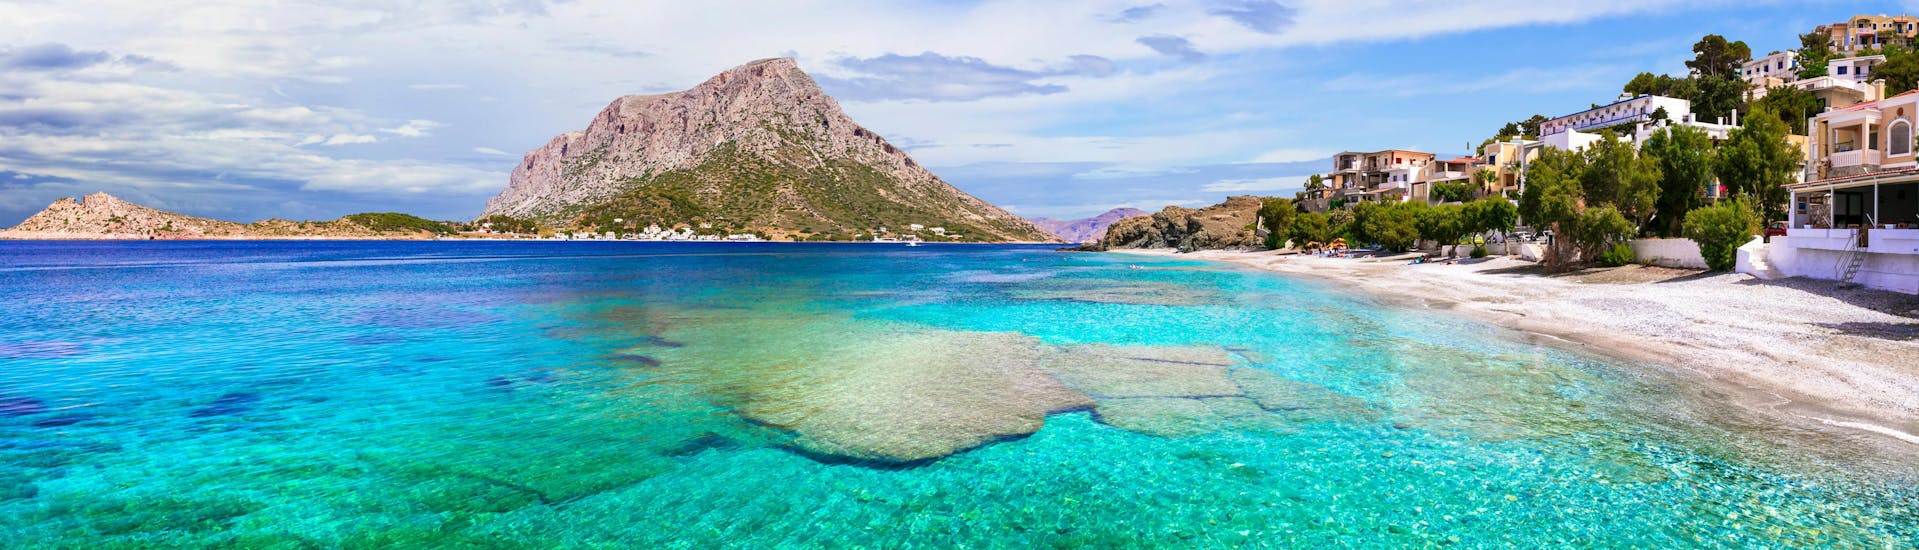 Vista sobre Kalymnos, una hermosa isla que podrá descubrir con un paseo en barco.